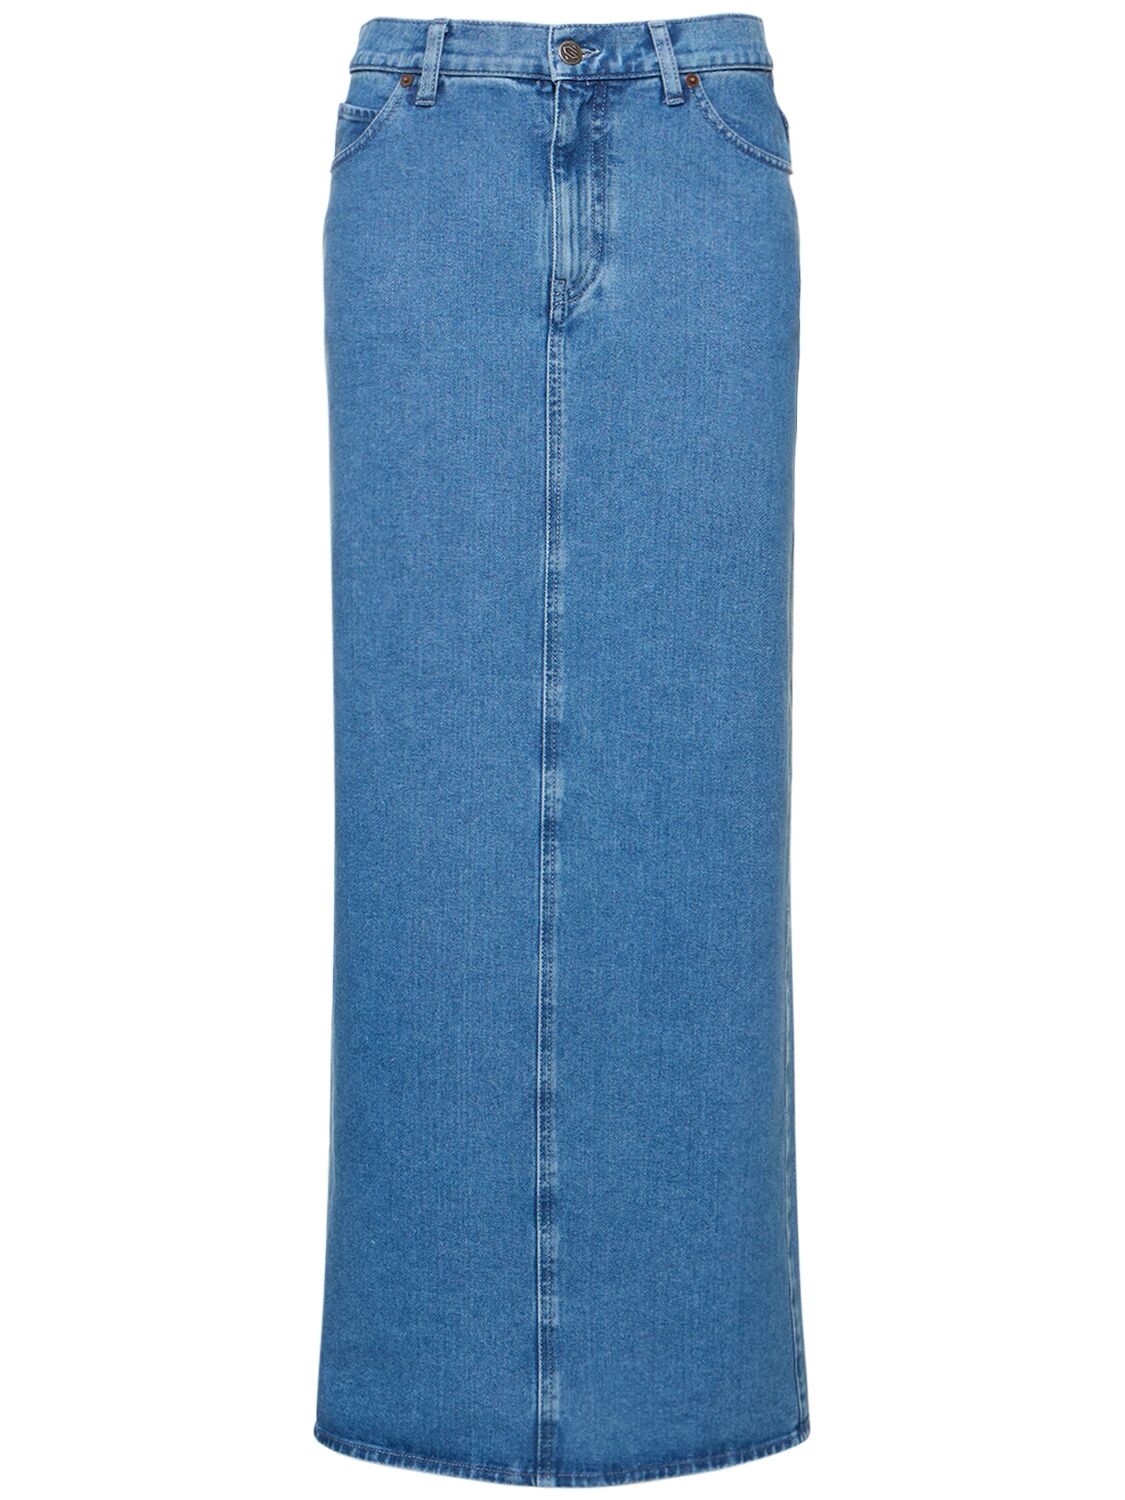 Image of Wool Blend Denim Long Skirt